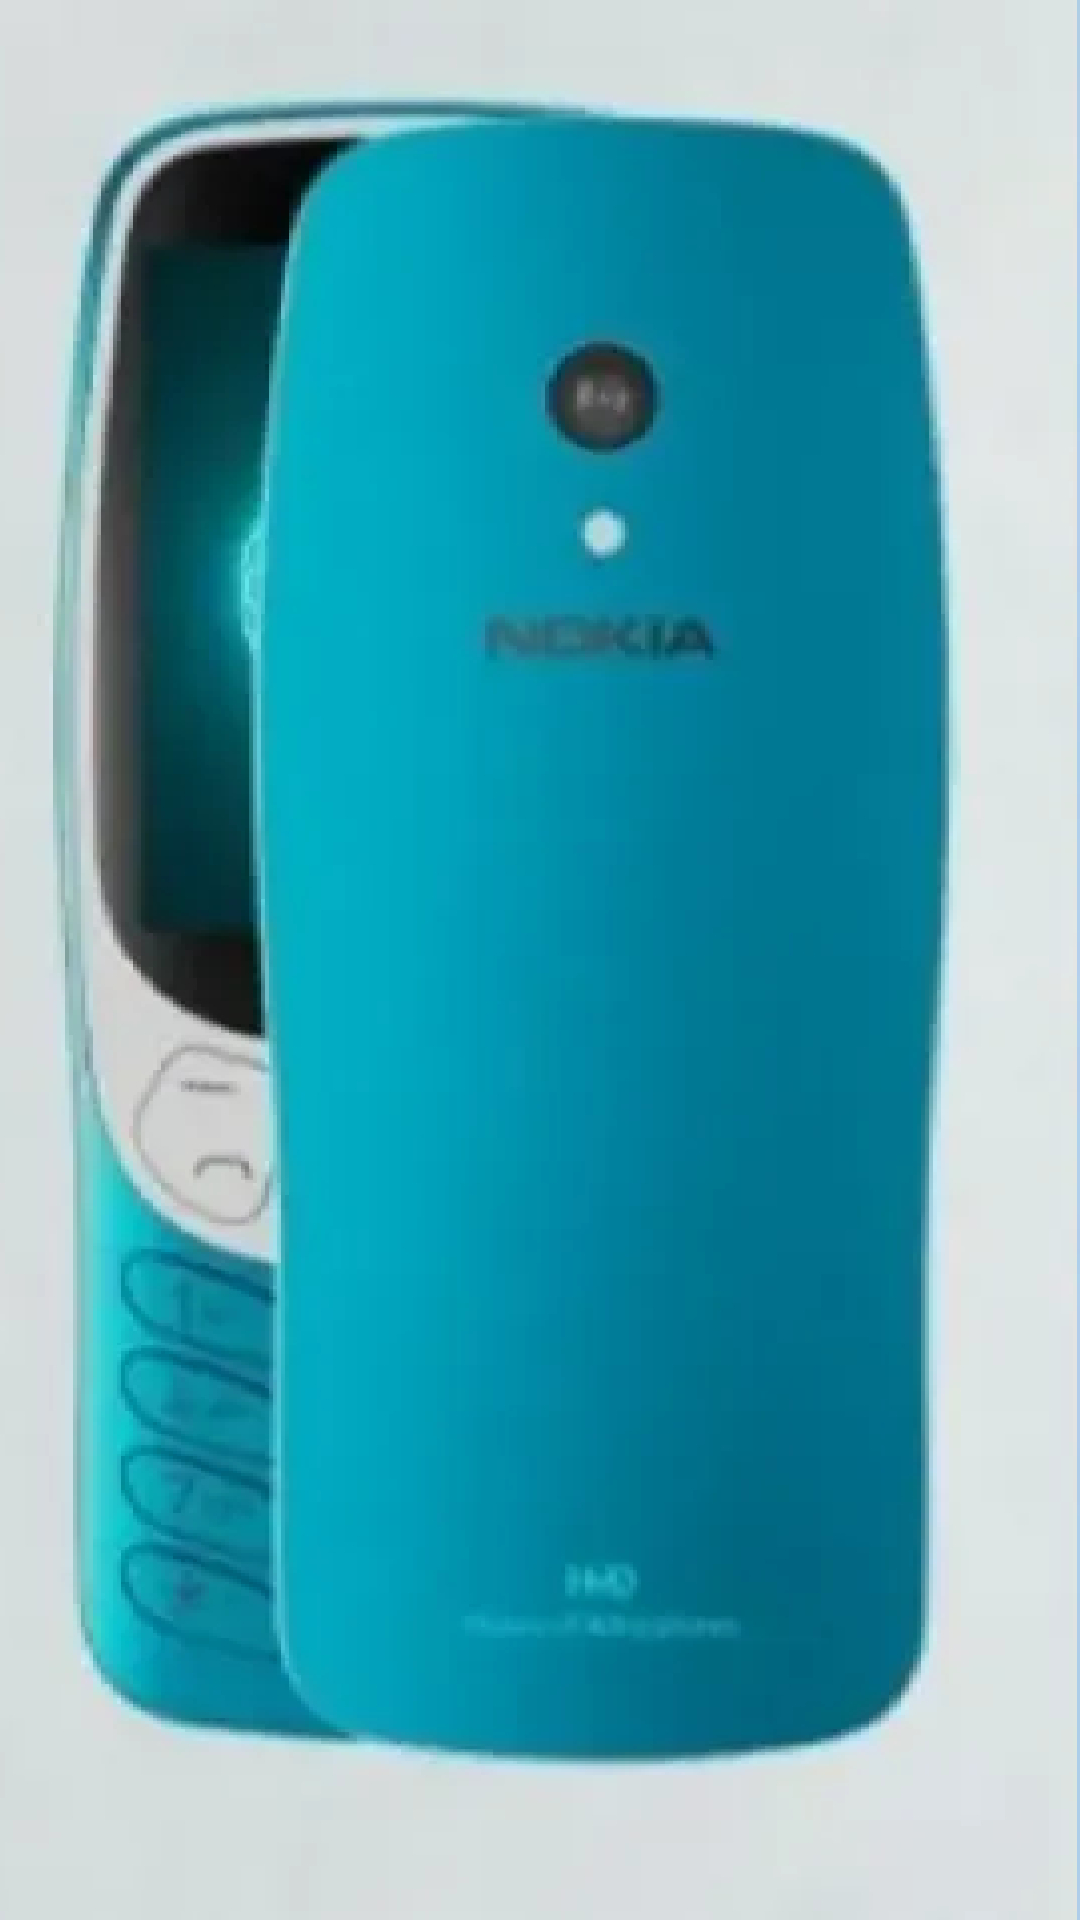 25 साल बाद फिर तहलका मचाएगा Nokia का यह धांसू फोन, HMD ने किया टीज